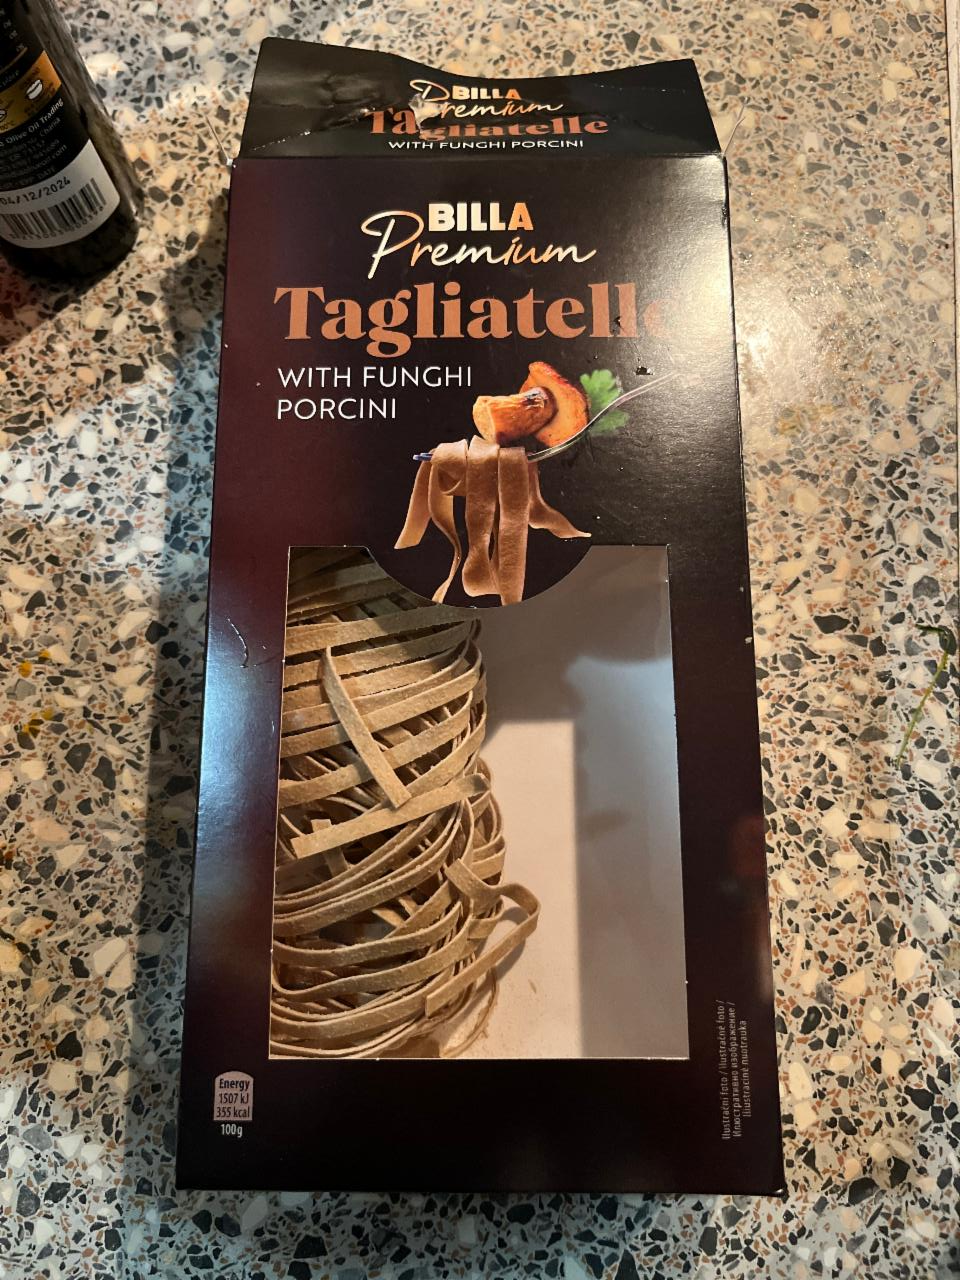 Fotografie - Tagliatelle with funghi porcini Billa Premium